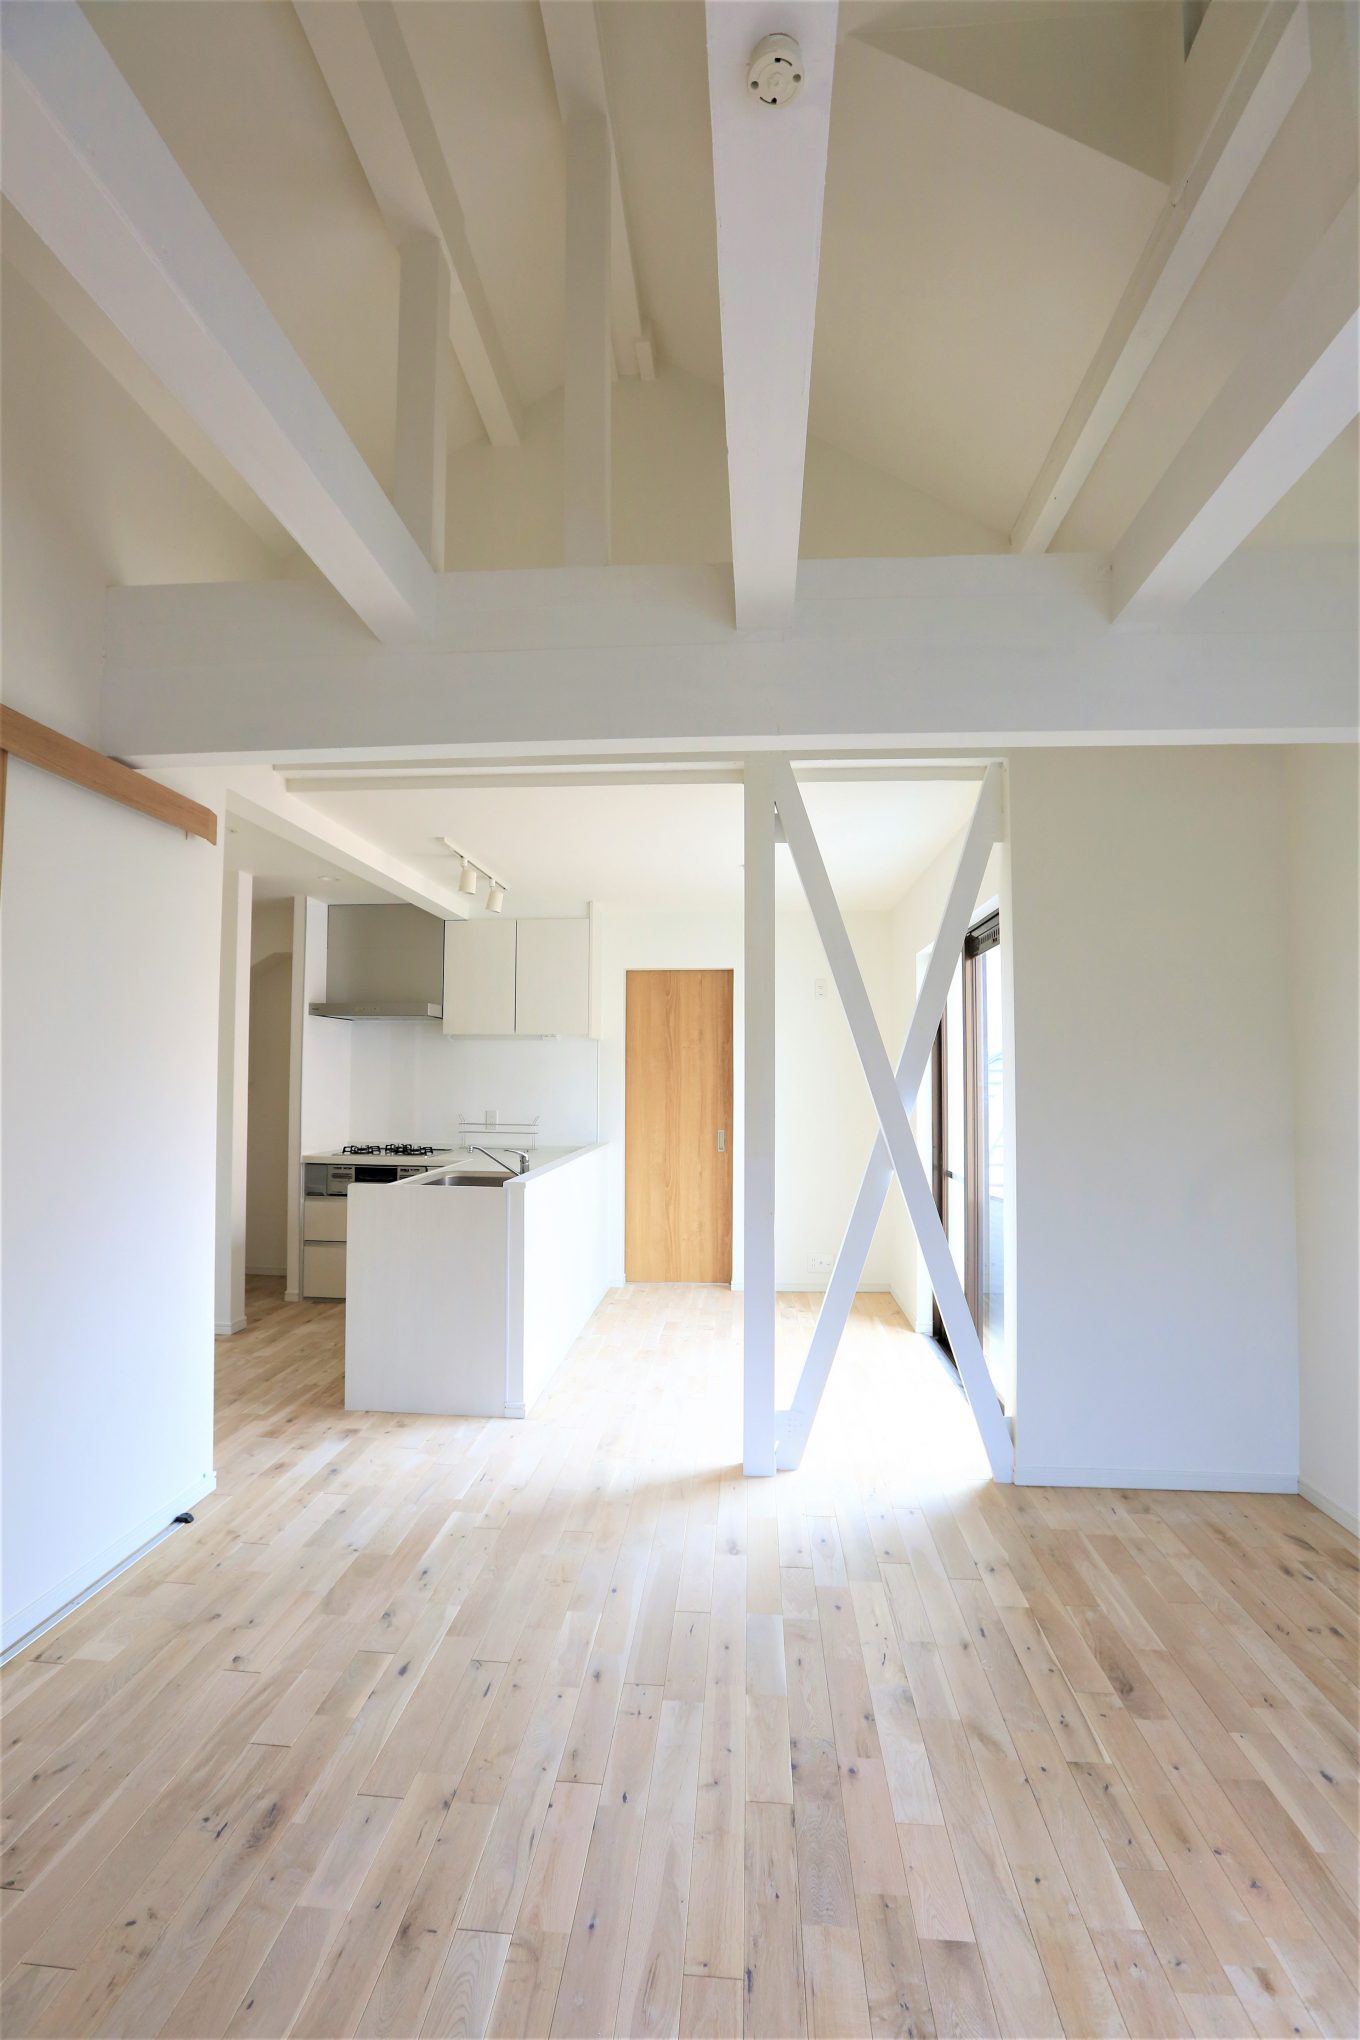 戸建てのキッチンを梁、壁ともに真っ白にリノベーション